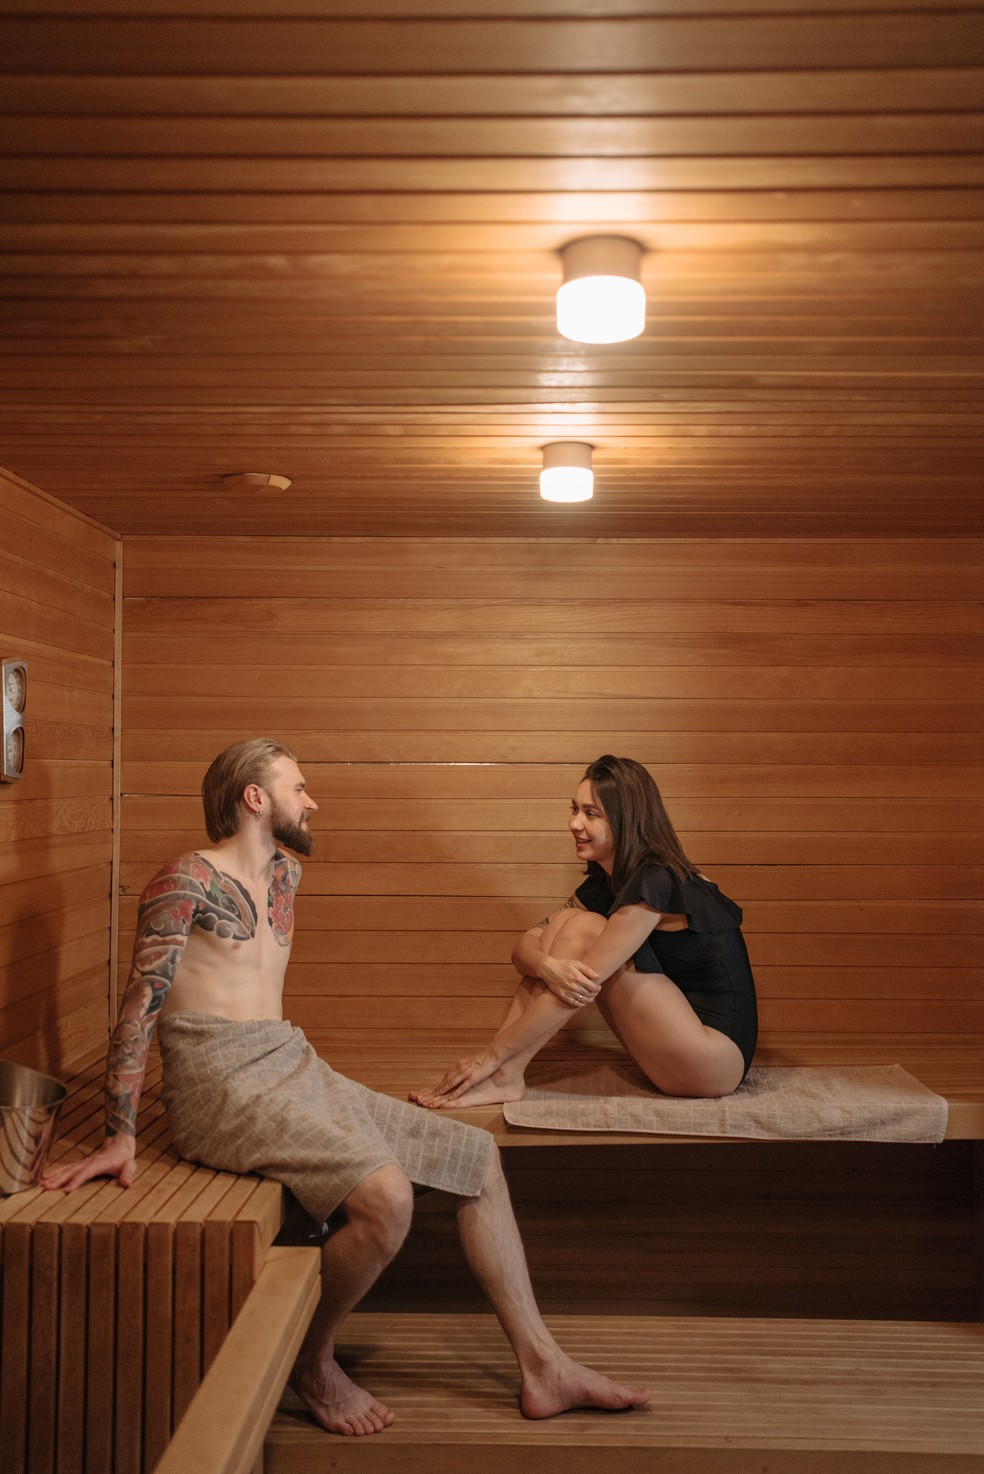 Toalha ou roupa de banho? Site cria mapa para ajudar a entender a etiqueta em saunas em diversos países — Foto: Reprodução / Pavel Danilyuk / Pexels